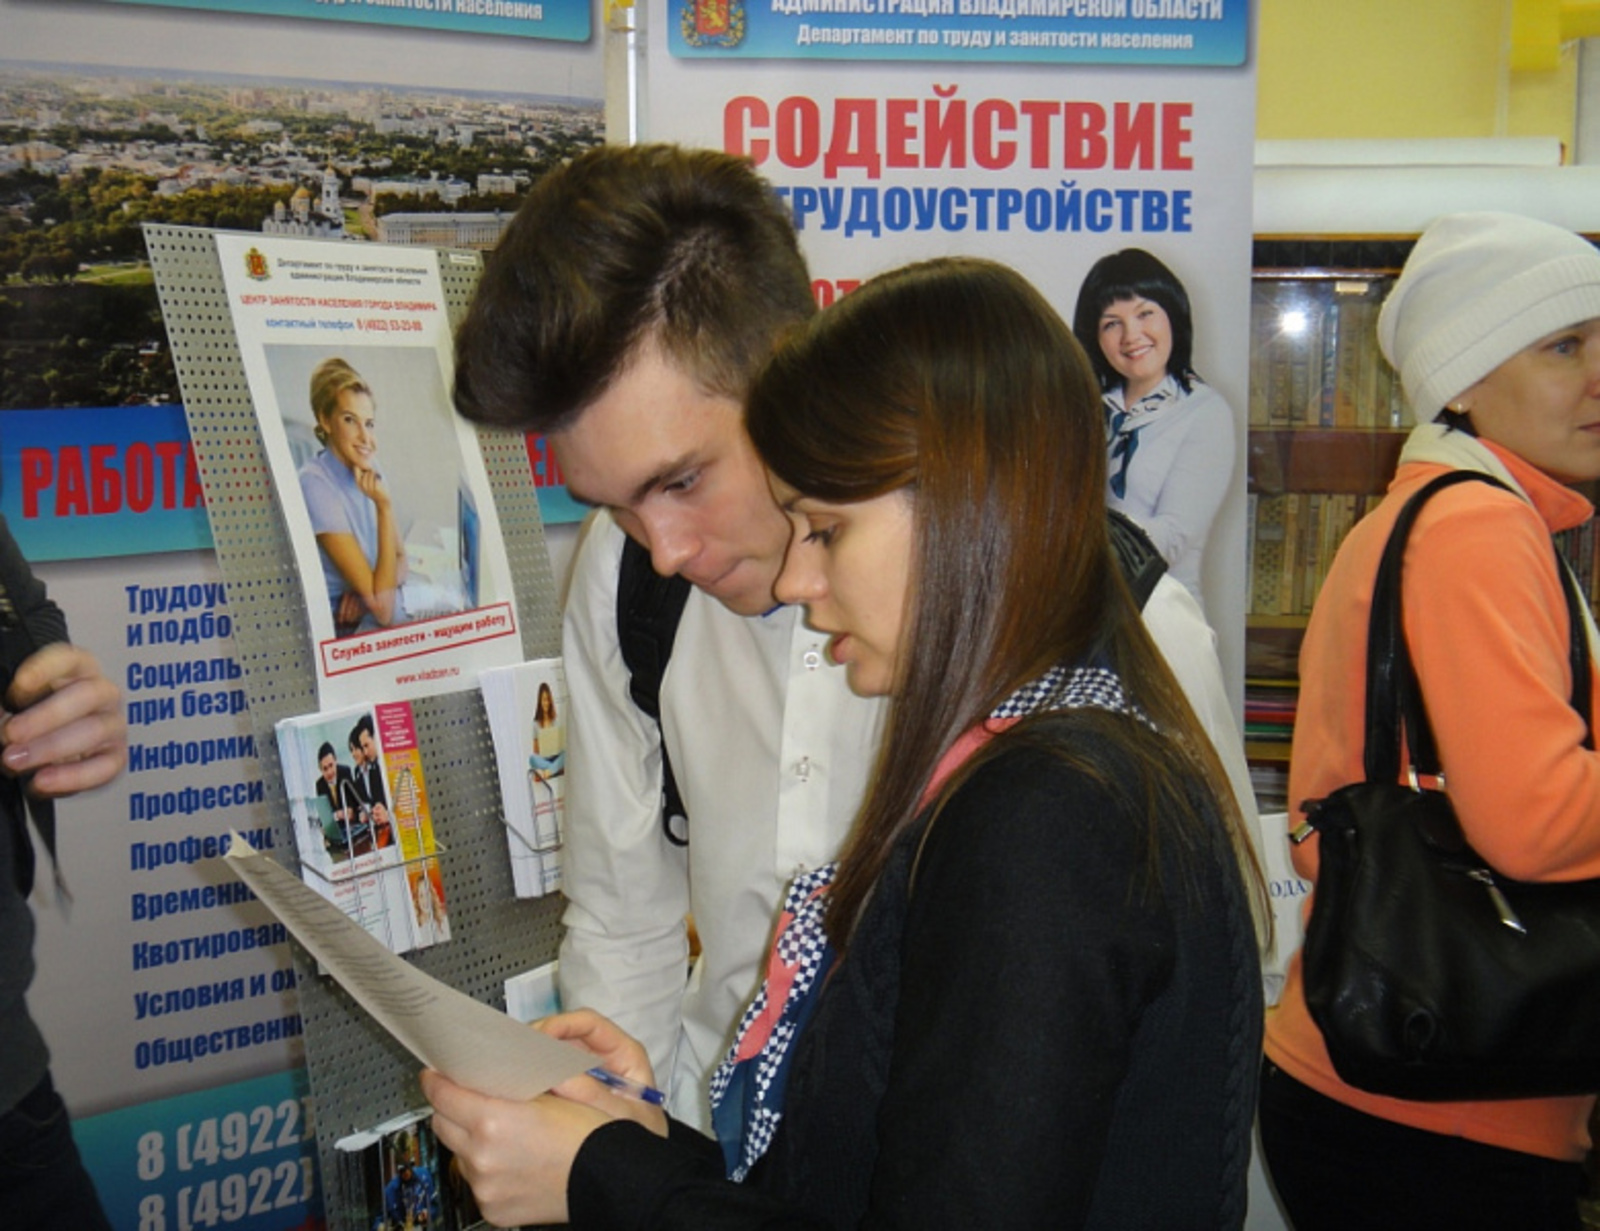 Центрами занятости Республики Башкортостан направлены на стажировку более 380 выпускников учебных заведений